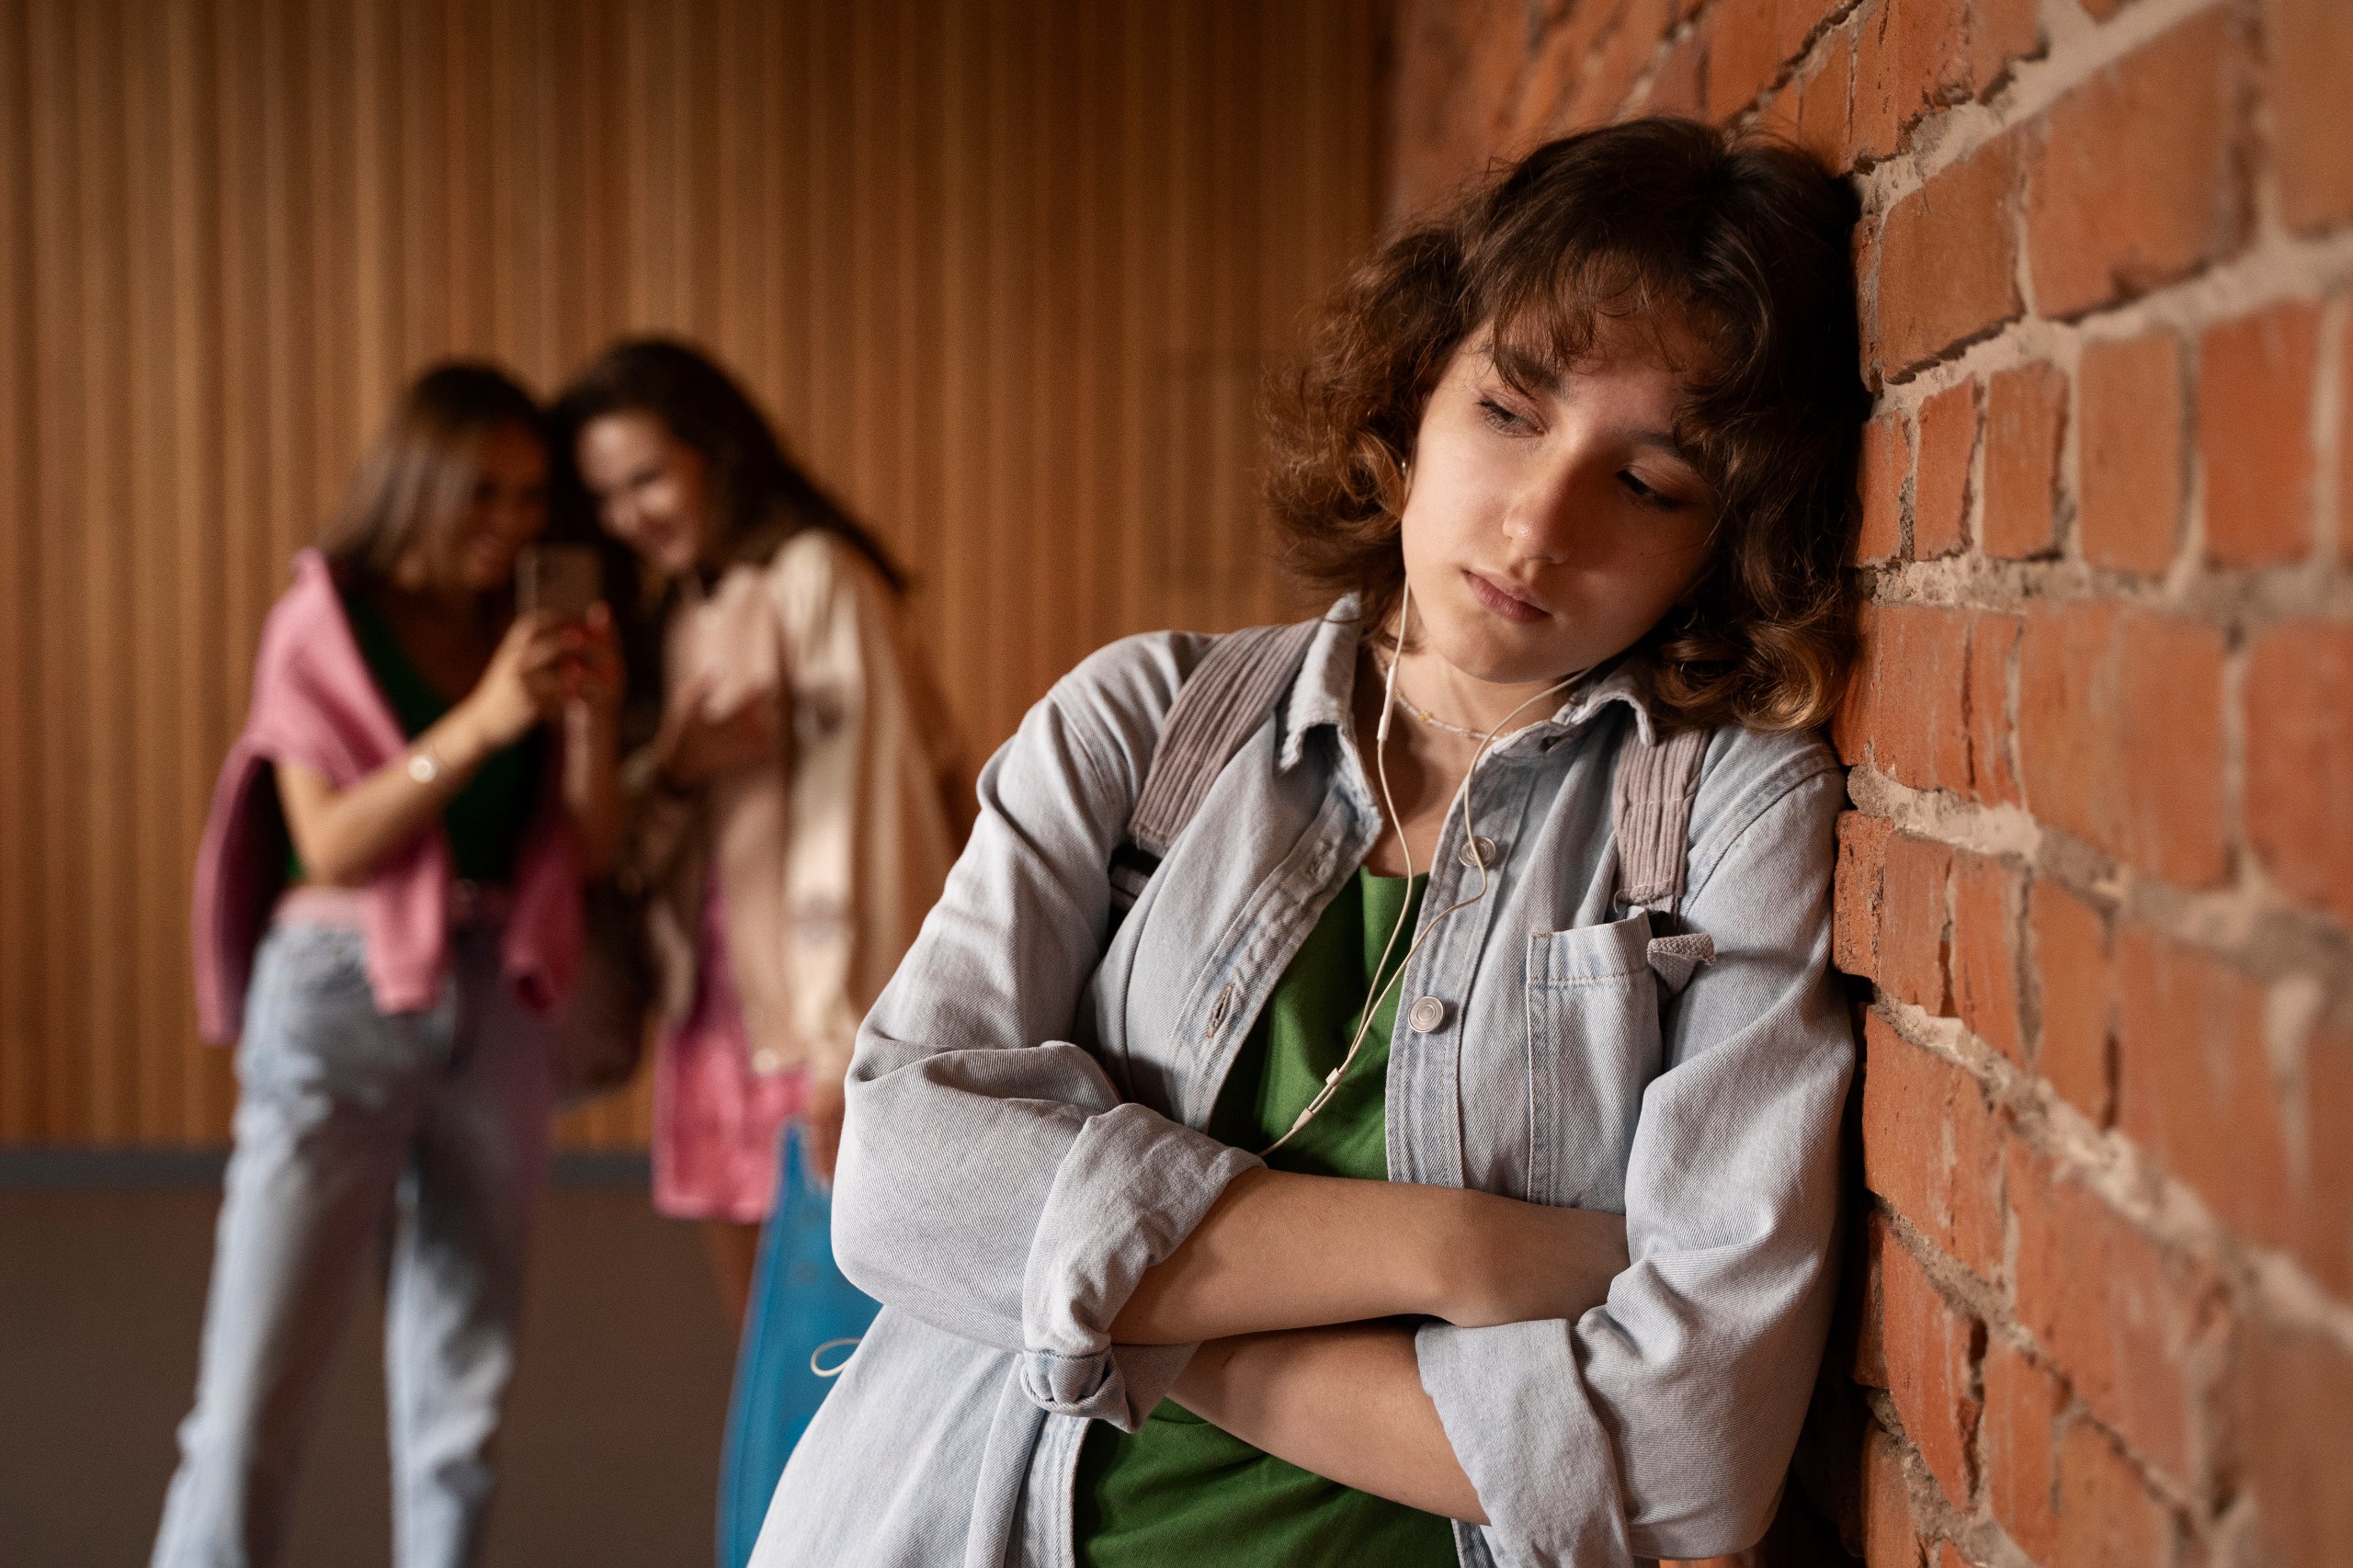 Майже 10% українських школярів страждають від постійного булінгу у закладах освіти - PISA image